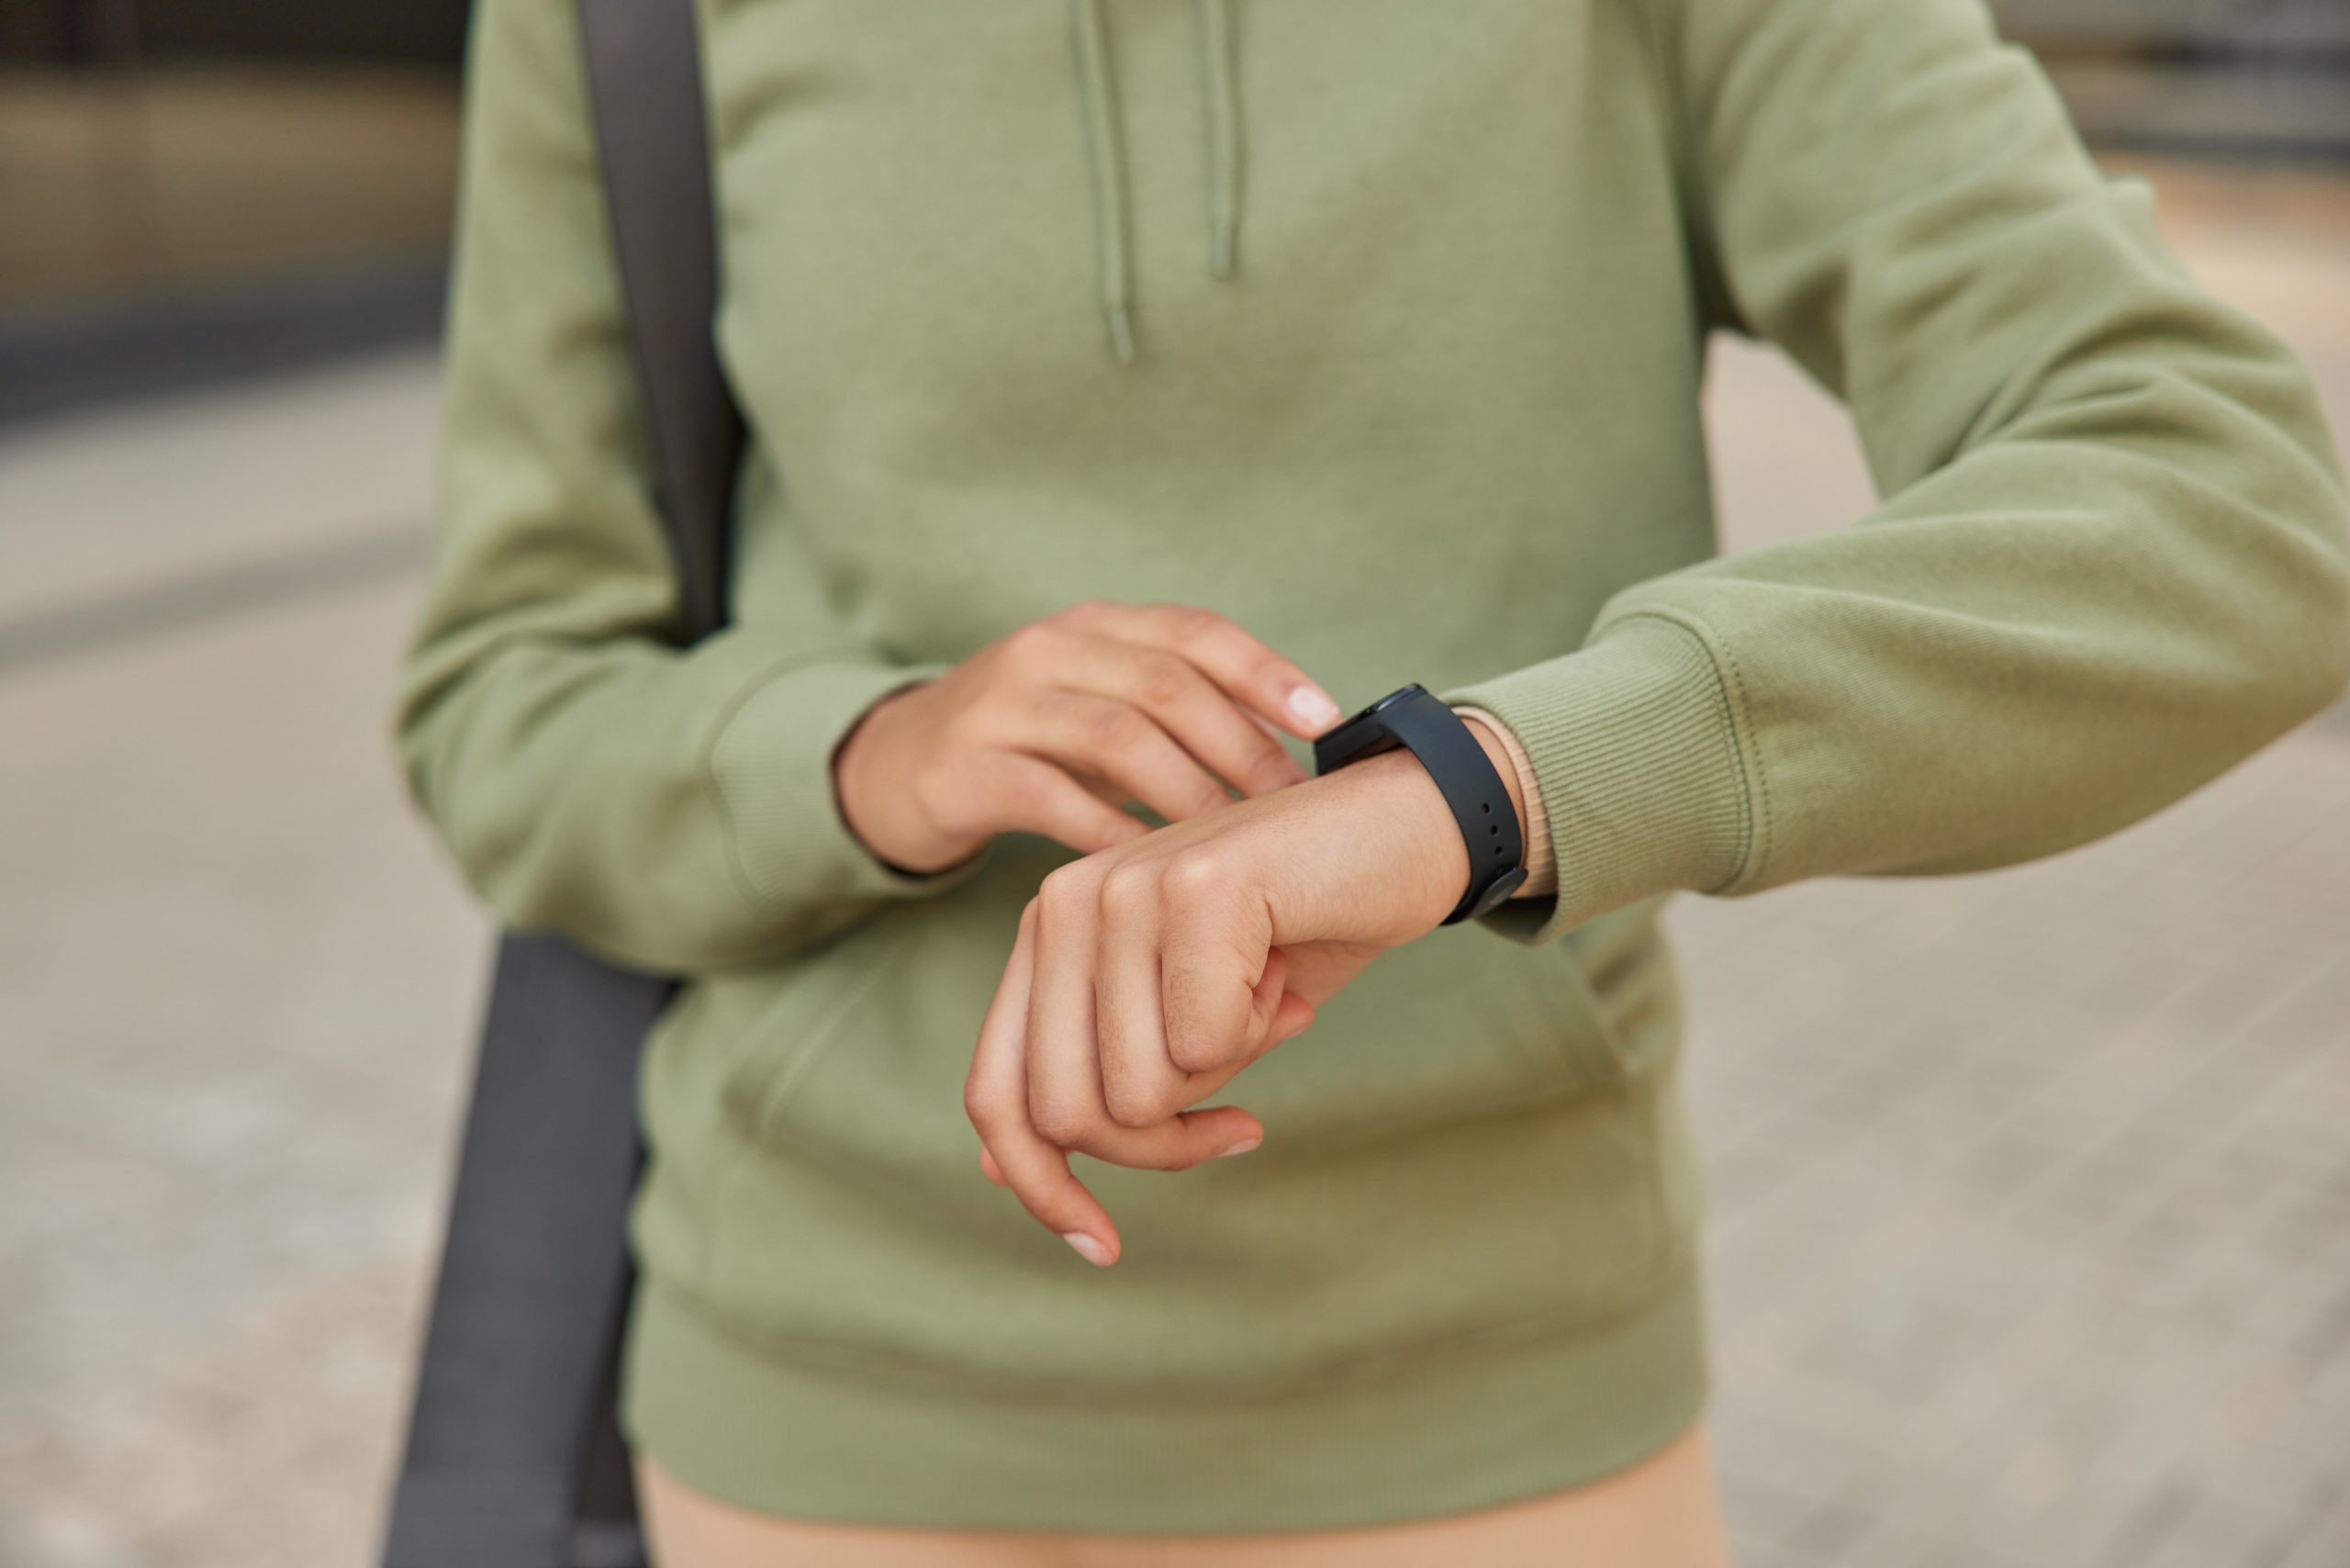 Salud femenina: Apple Watch incorpora sensor de temperatura para conocer el ciclo de ovulación